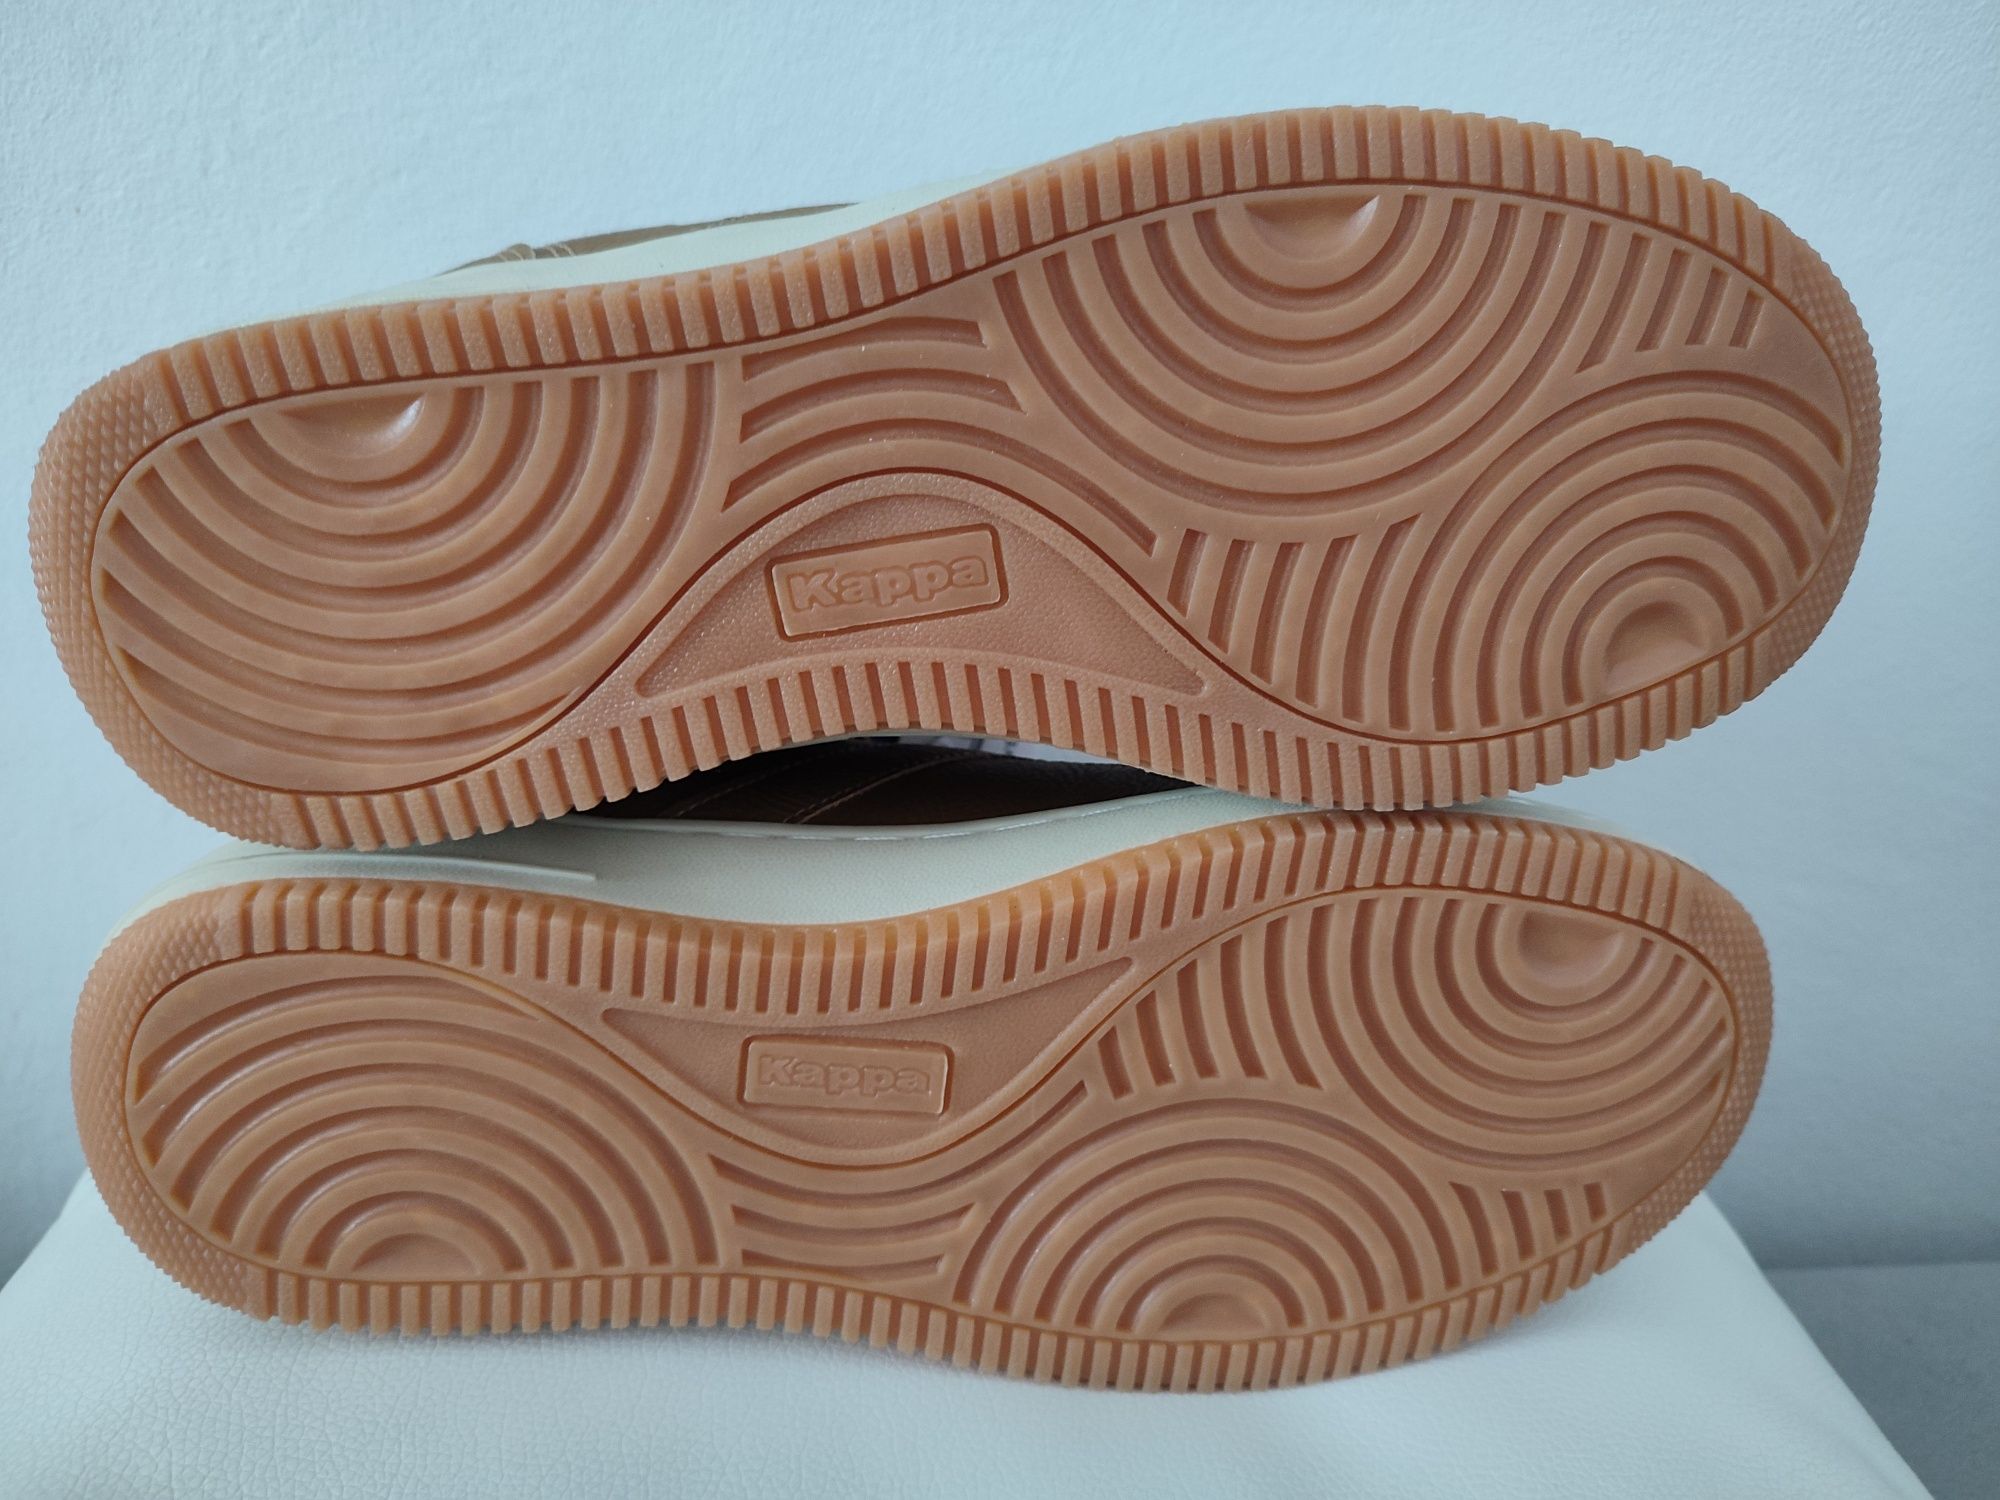 Nowe męskie buty rekreacyjne KAPPA Nanook II rozmiar 42